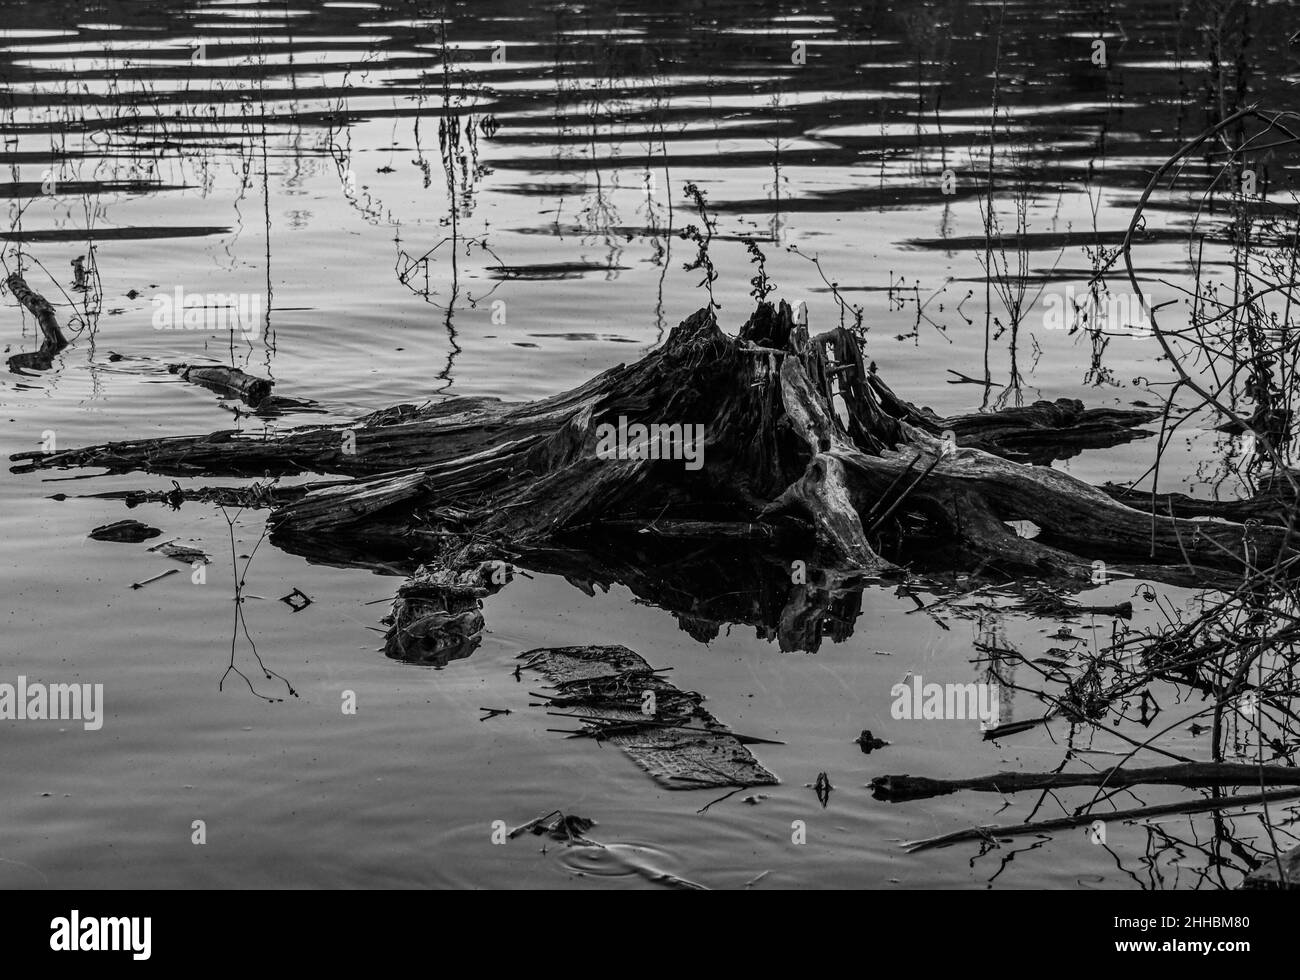 Ecco un'immagine in bianco e nero di un ceppo di albero parzialmente sommerso preso a Lake Williams, York County, Pennsylvania USA Foto Stock